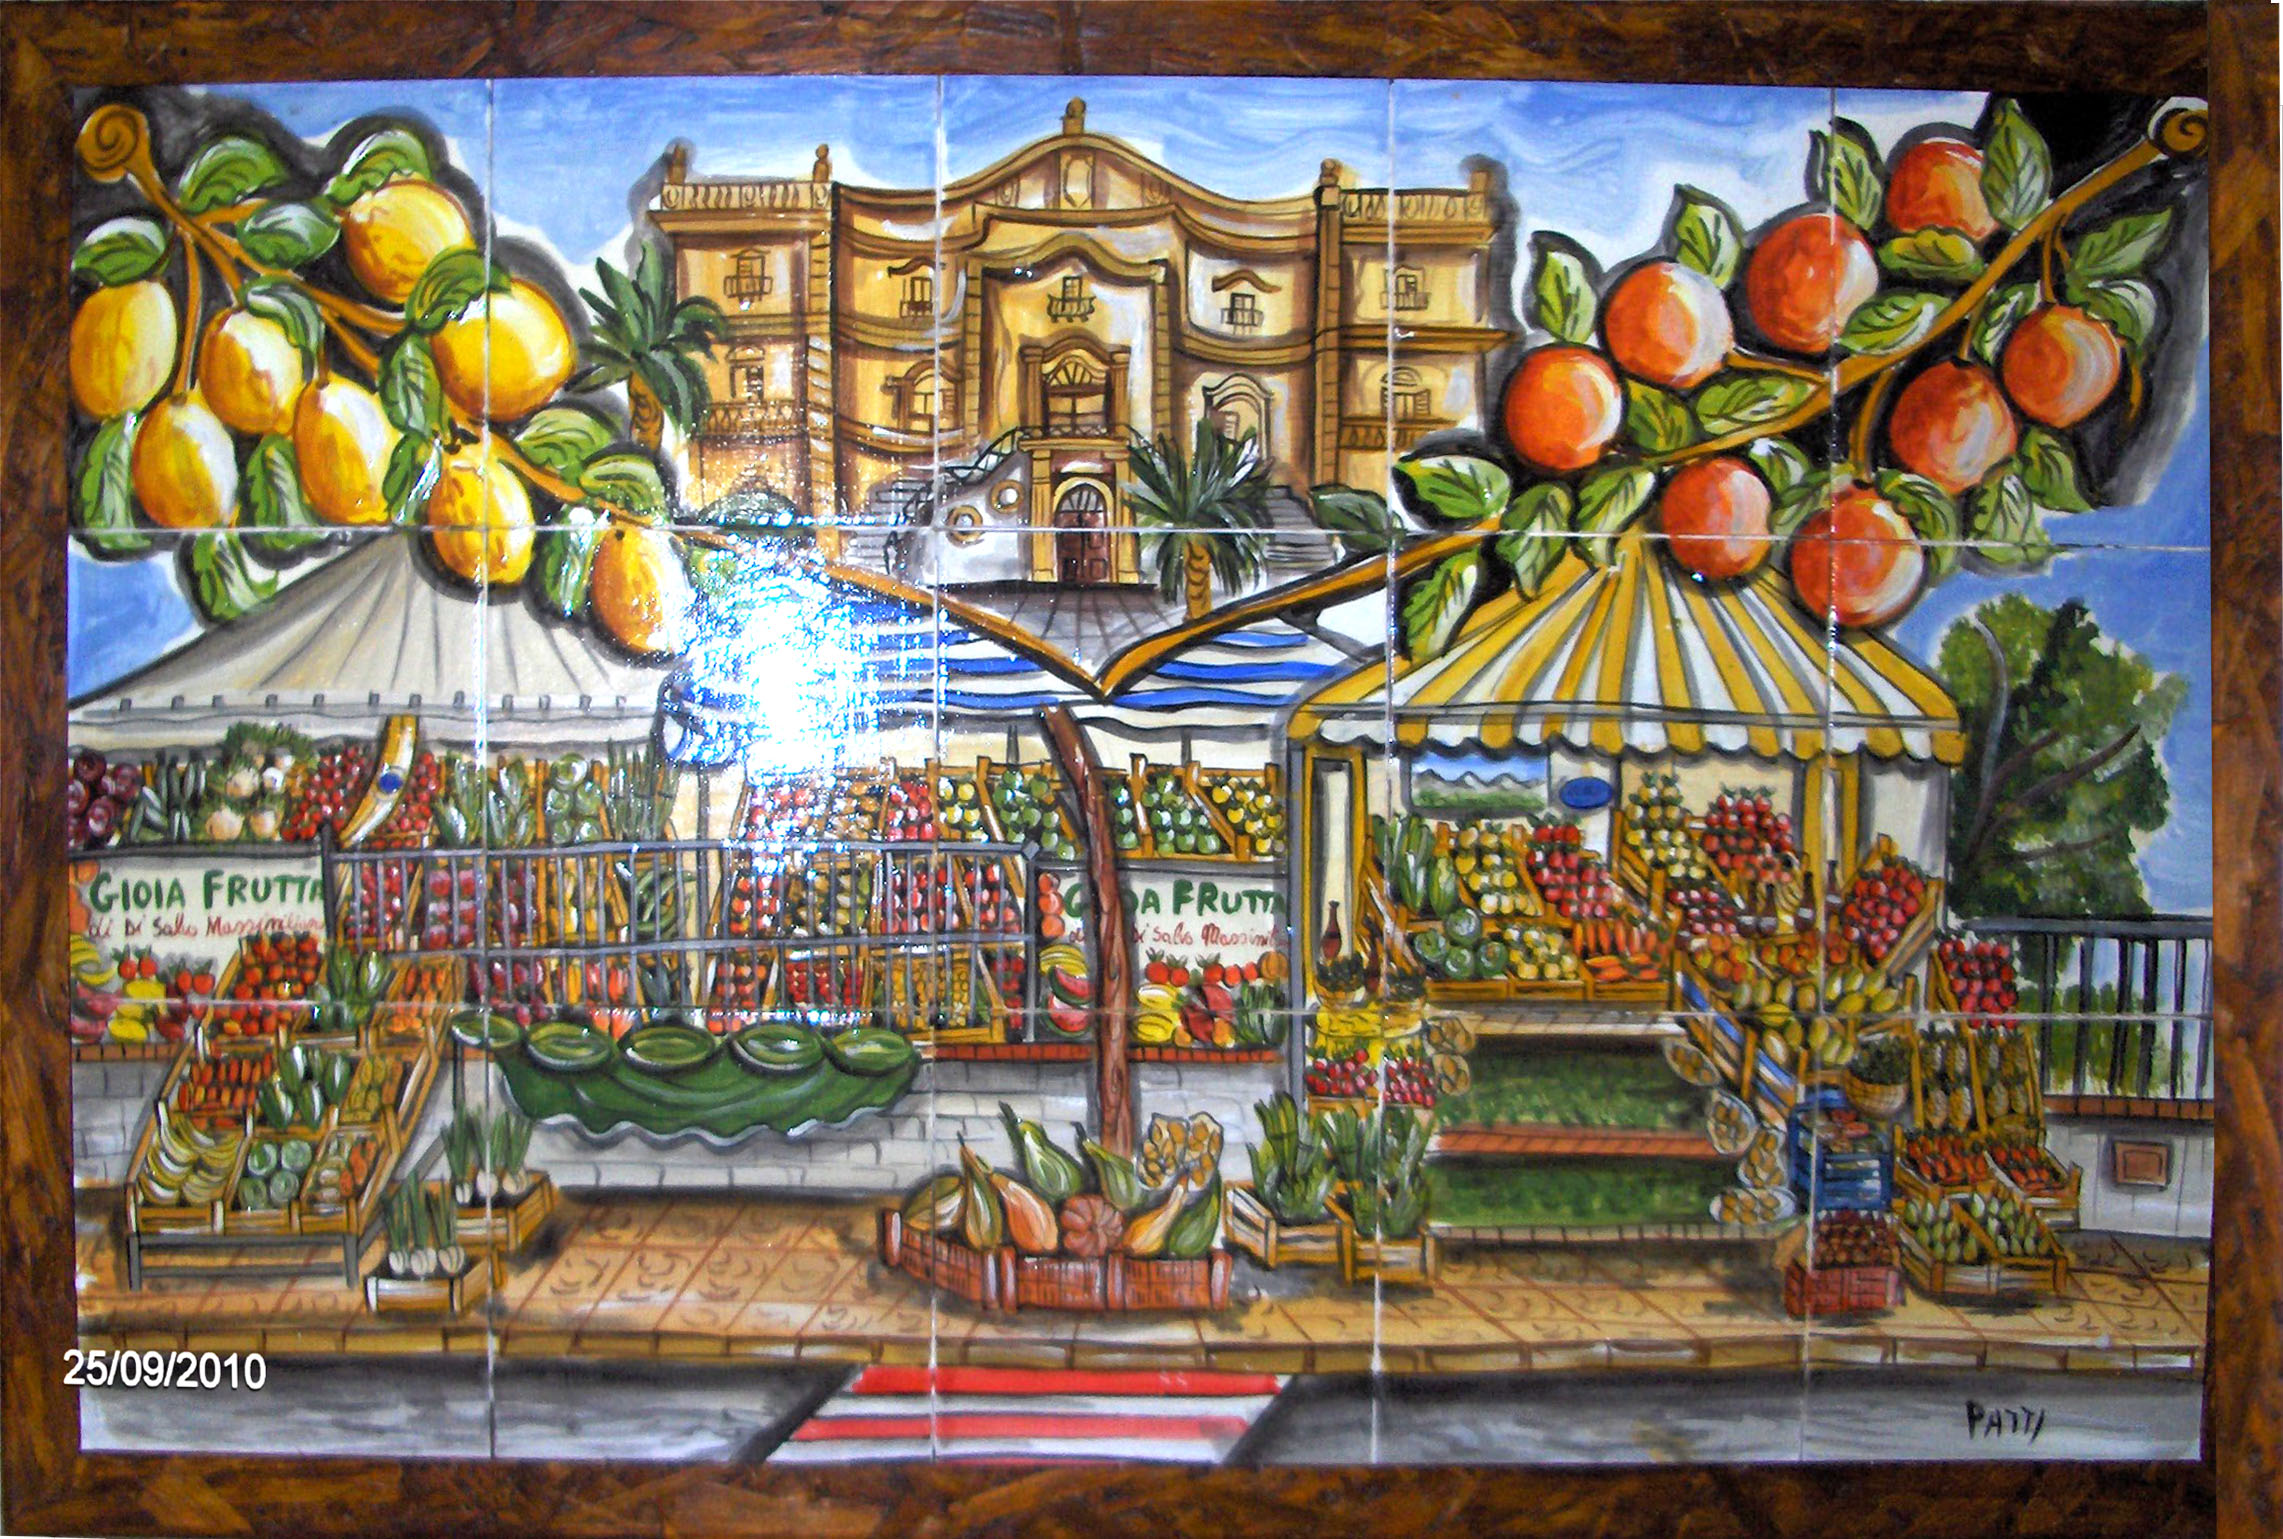 Pannello Gioia Frutta, a Bagheria